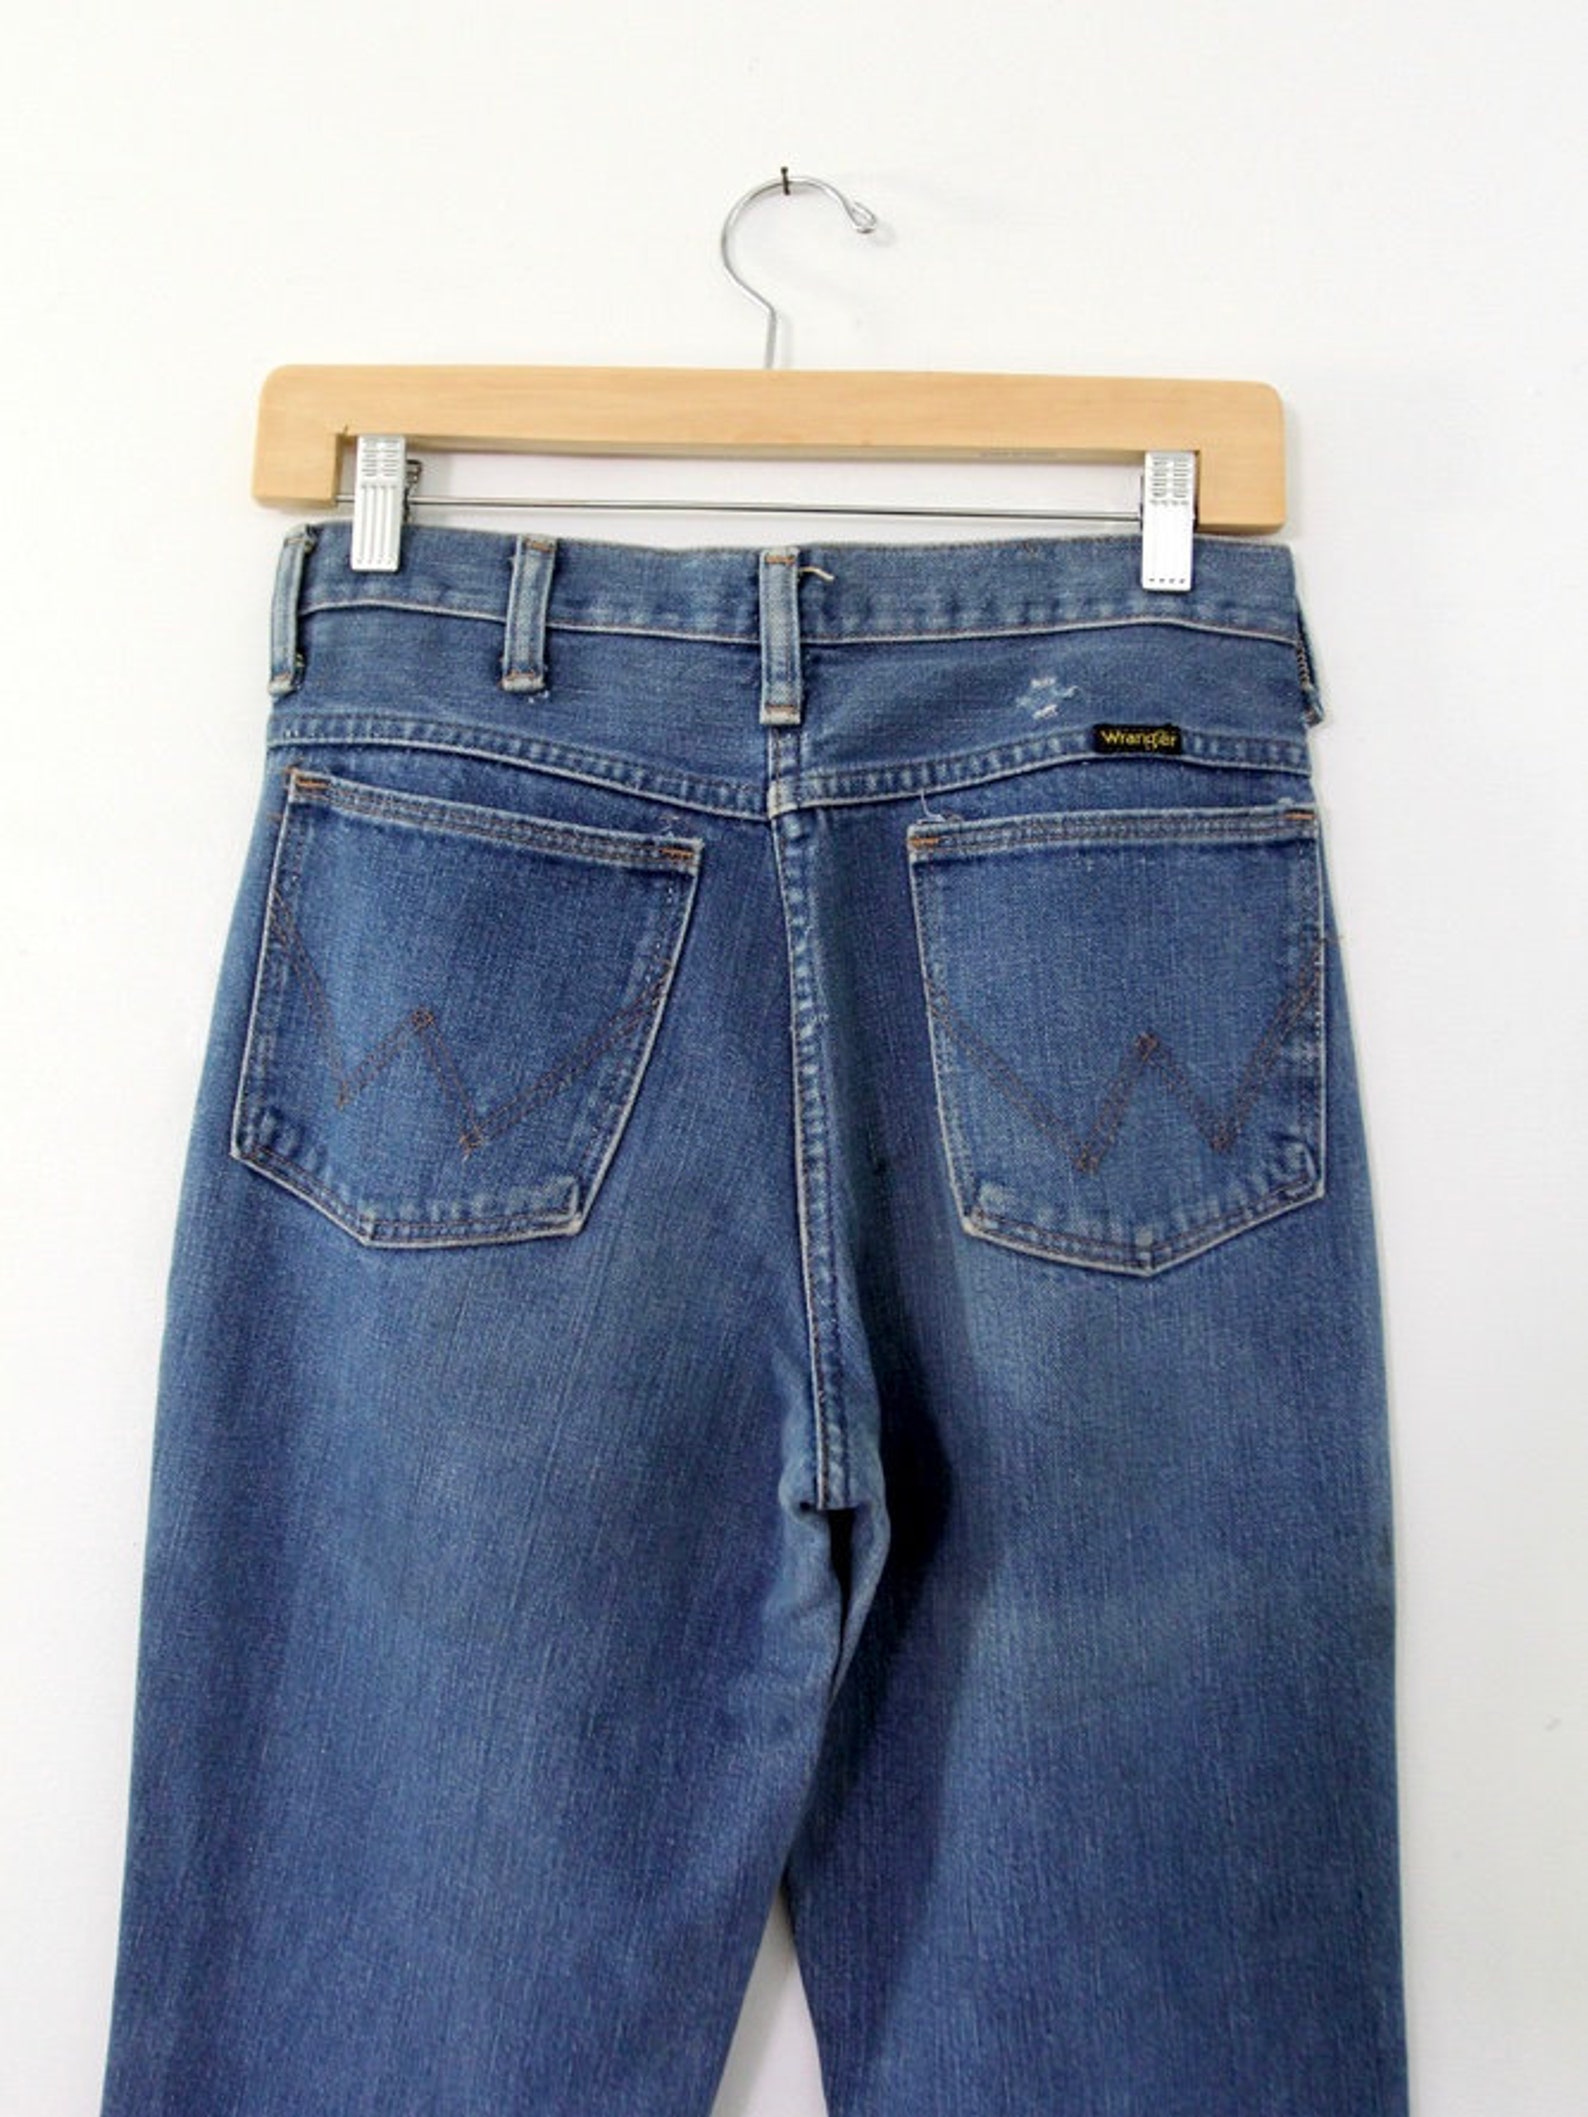 Wrangler jeans vintage 70s Wrangler flare leg jeans 29 x 32 | Etsy